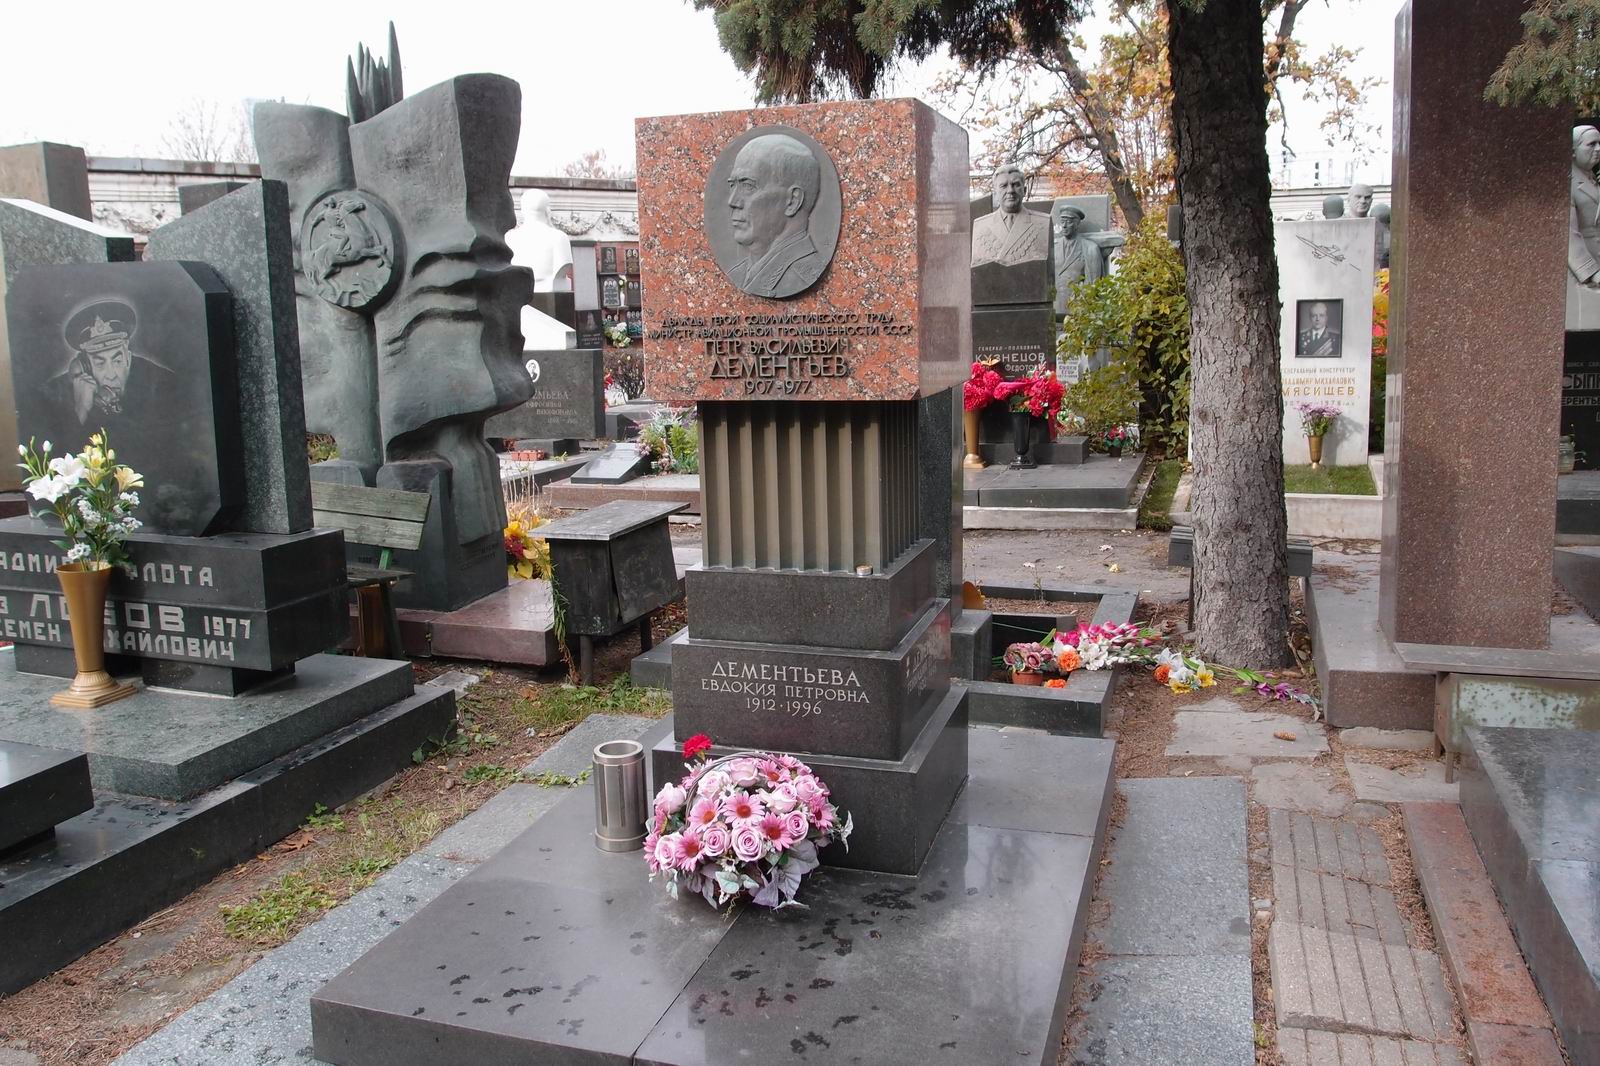 Памятник на могиле Дементьева П.В. (1907-1977), ск. М.Аникушин, арх. С.Бухаев, на Новодевичьем кладбище (7-13-13). Нажмите левую кнопку мыши чтобы увидеть фрагмент памятника.